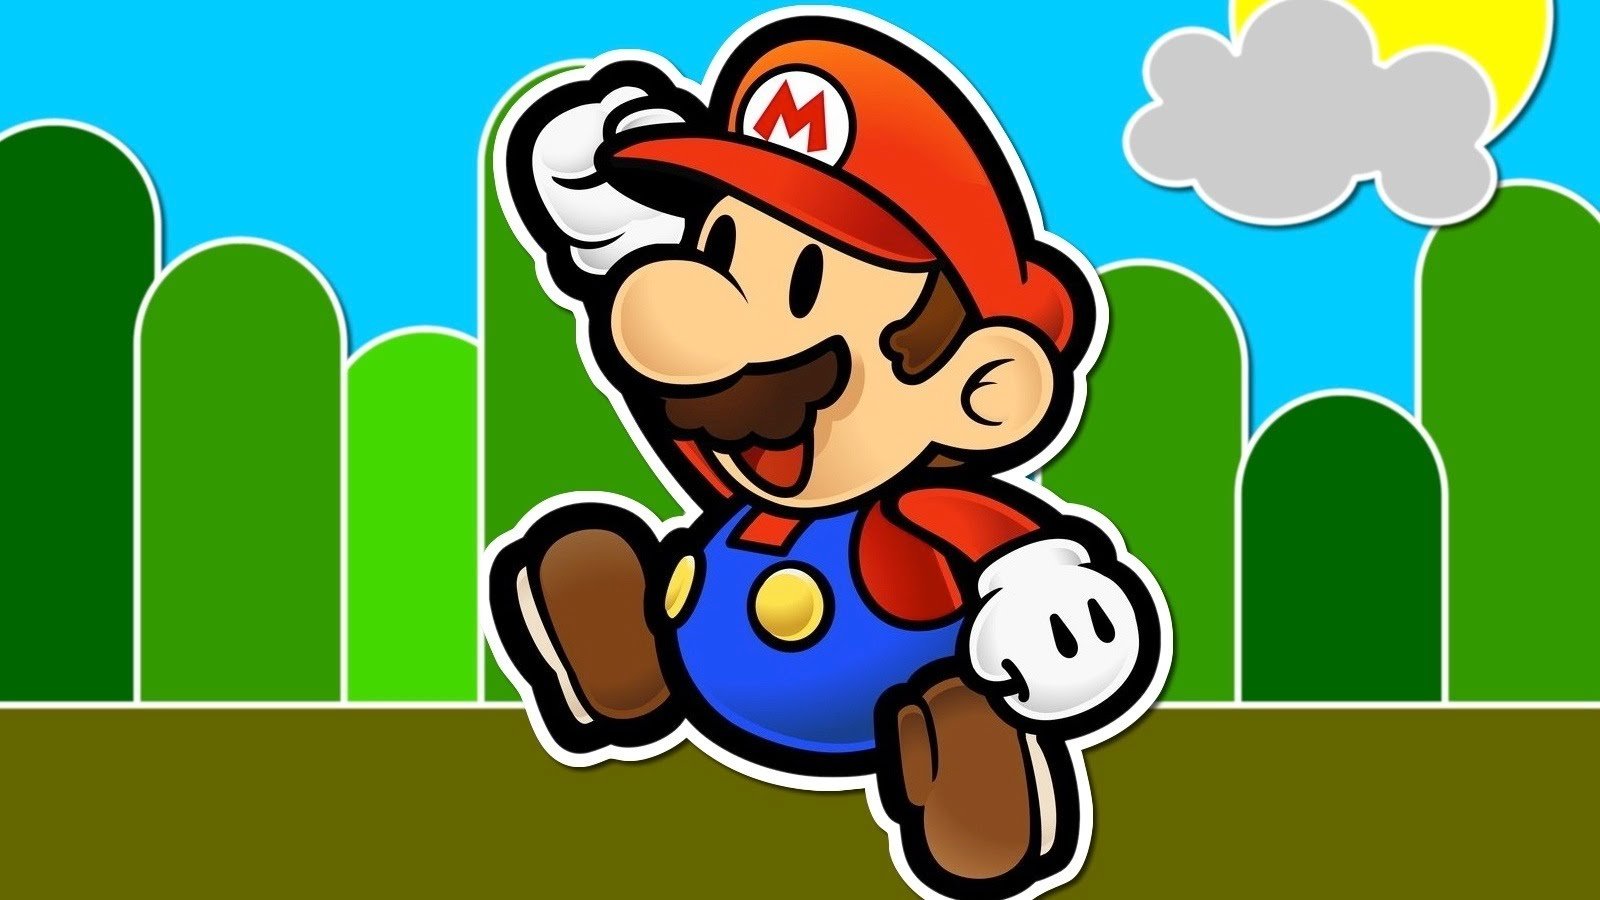 Mario bros x